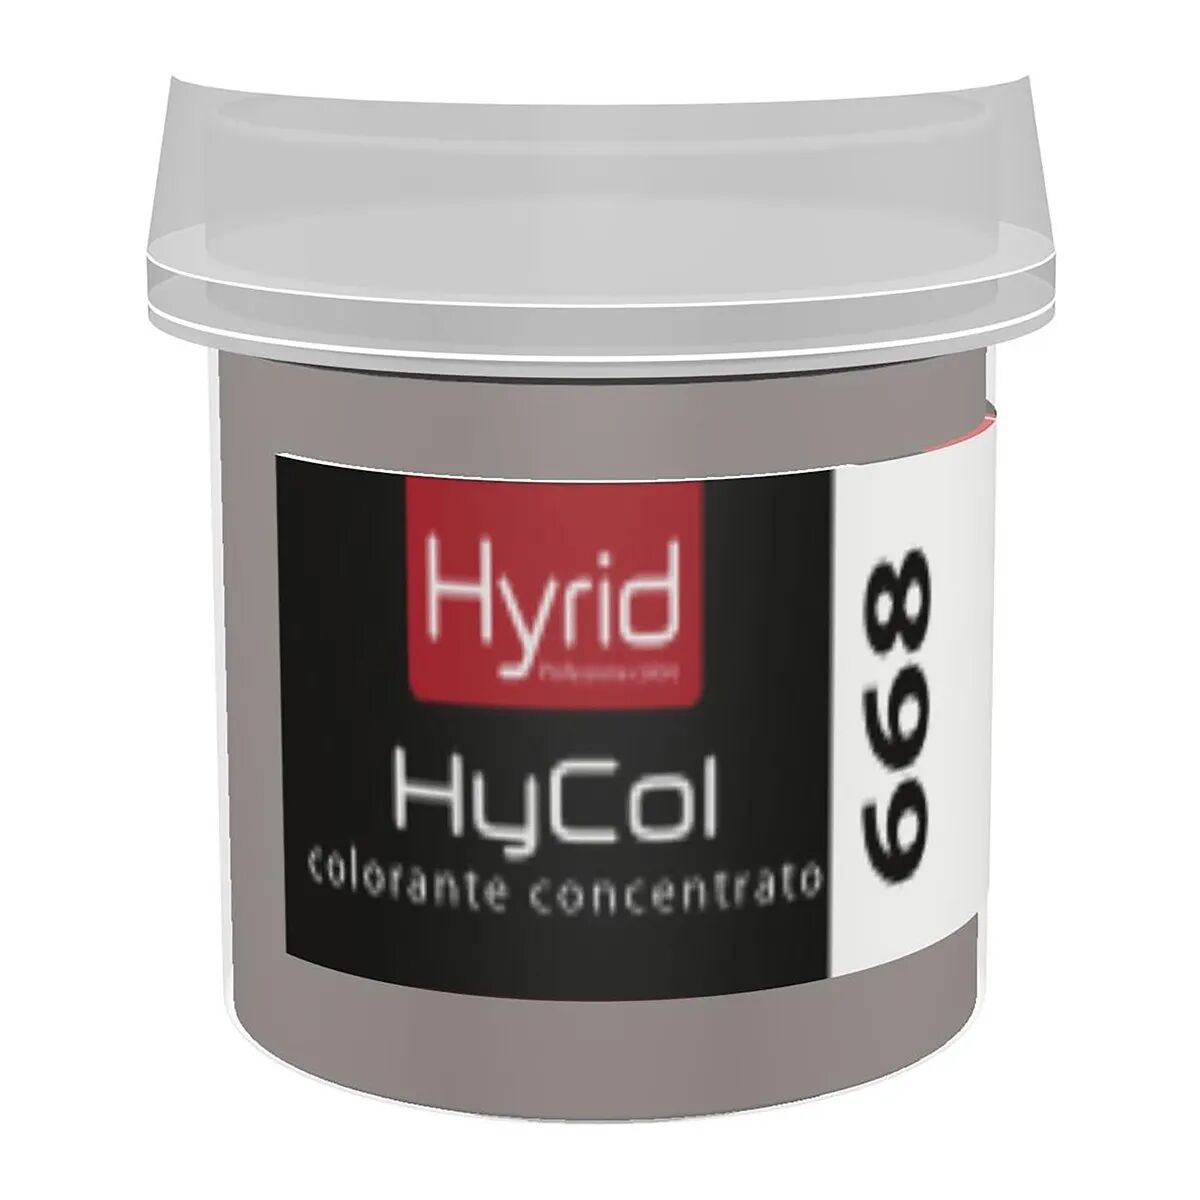 Hyrid By Covema COLORANTE CONCENTRATO HYCOL 668 HYRID CORDA ACCENTO 80 ml PER FINITURE DECORATIVE